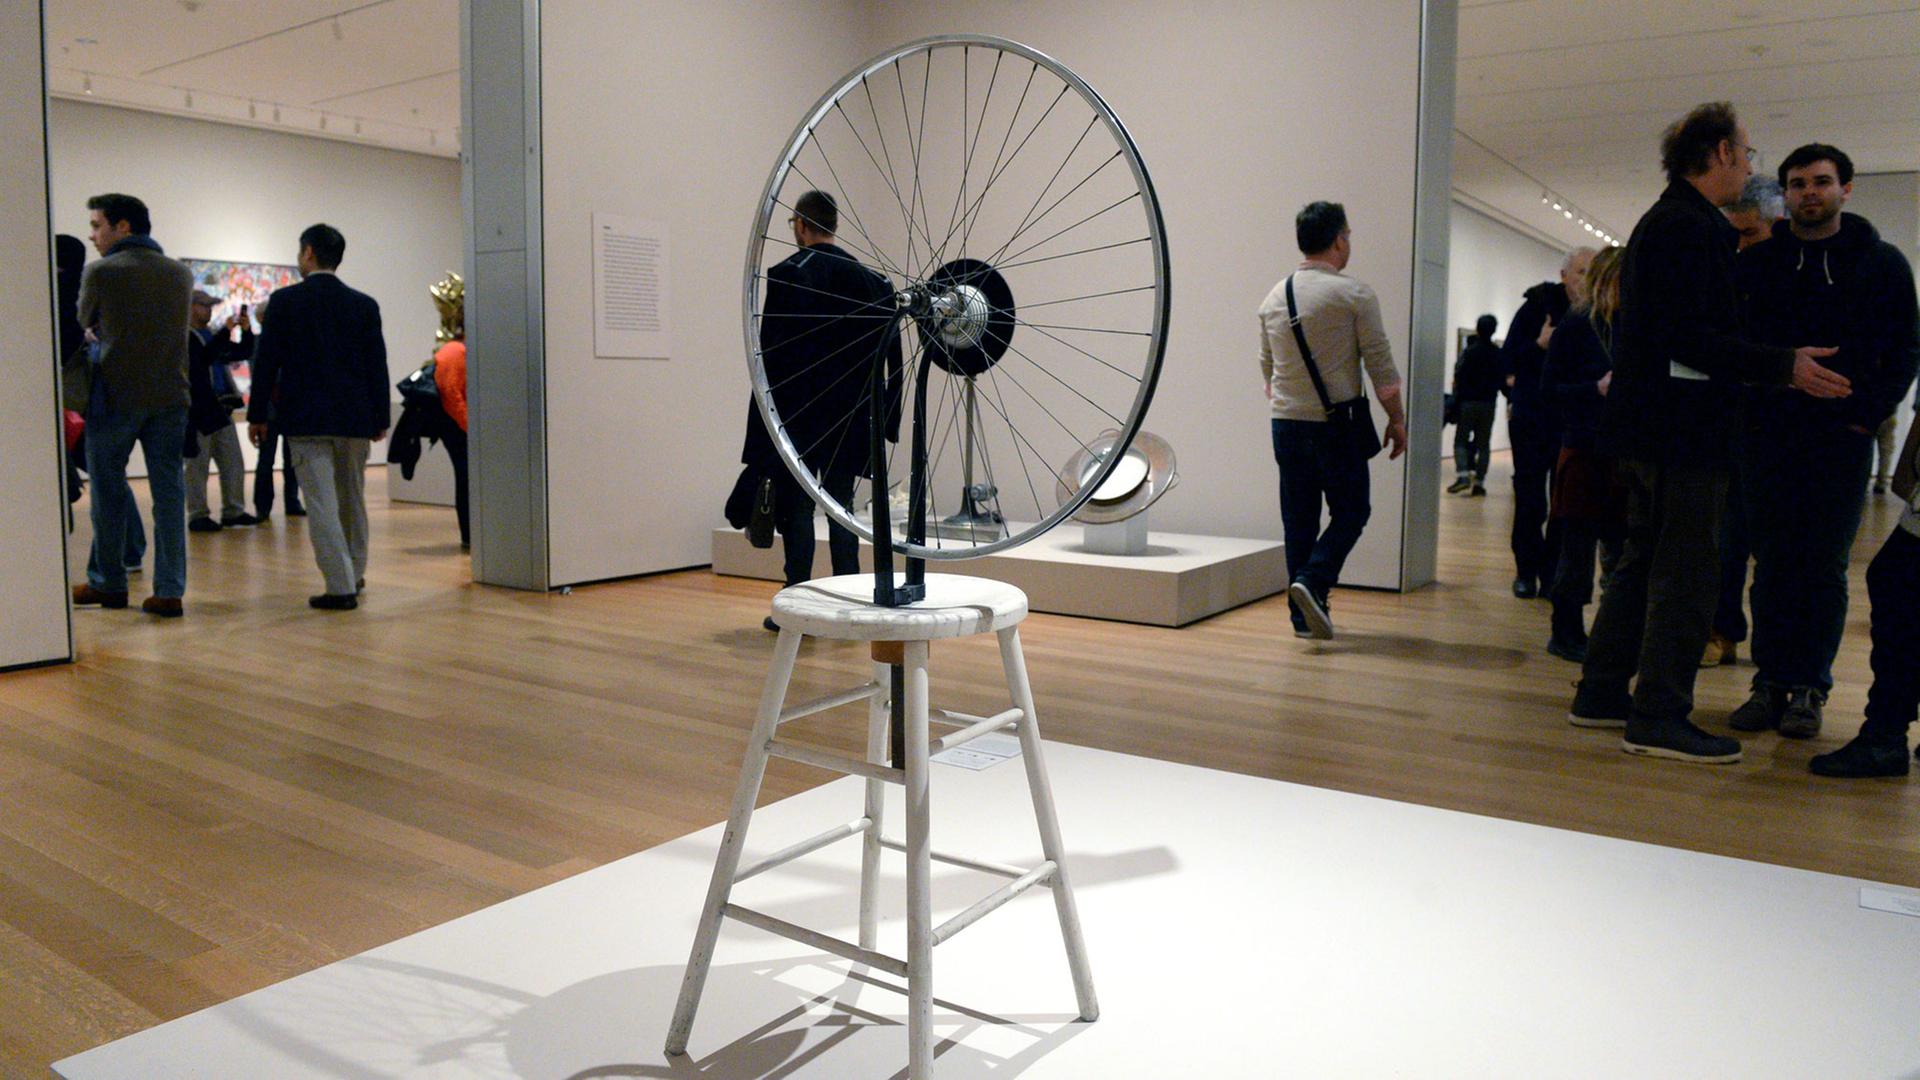 Die Arbeit "Bicycle Wheel" von Marcel Duchamp im Museum of Modern Art, MoMA, in New York.